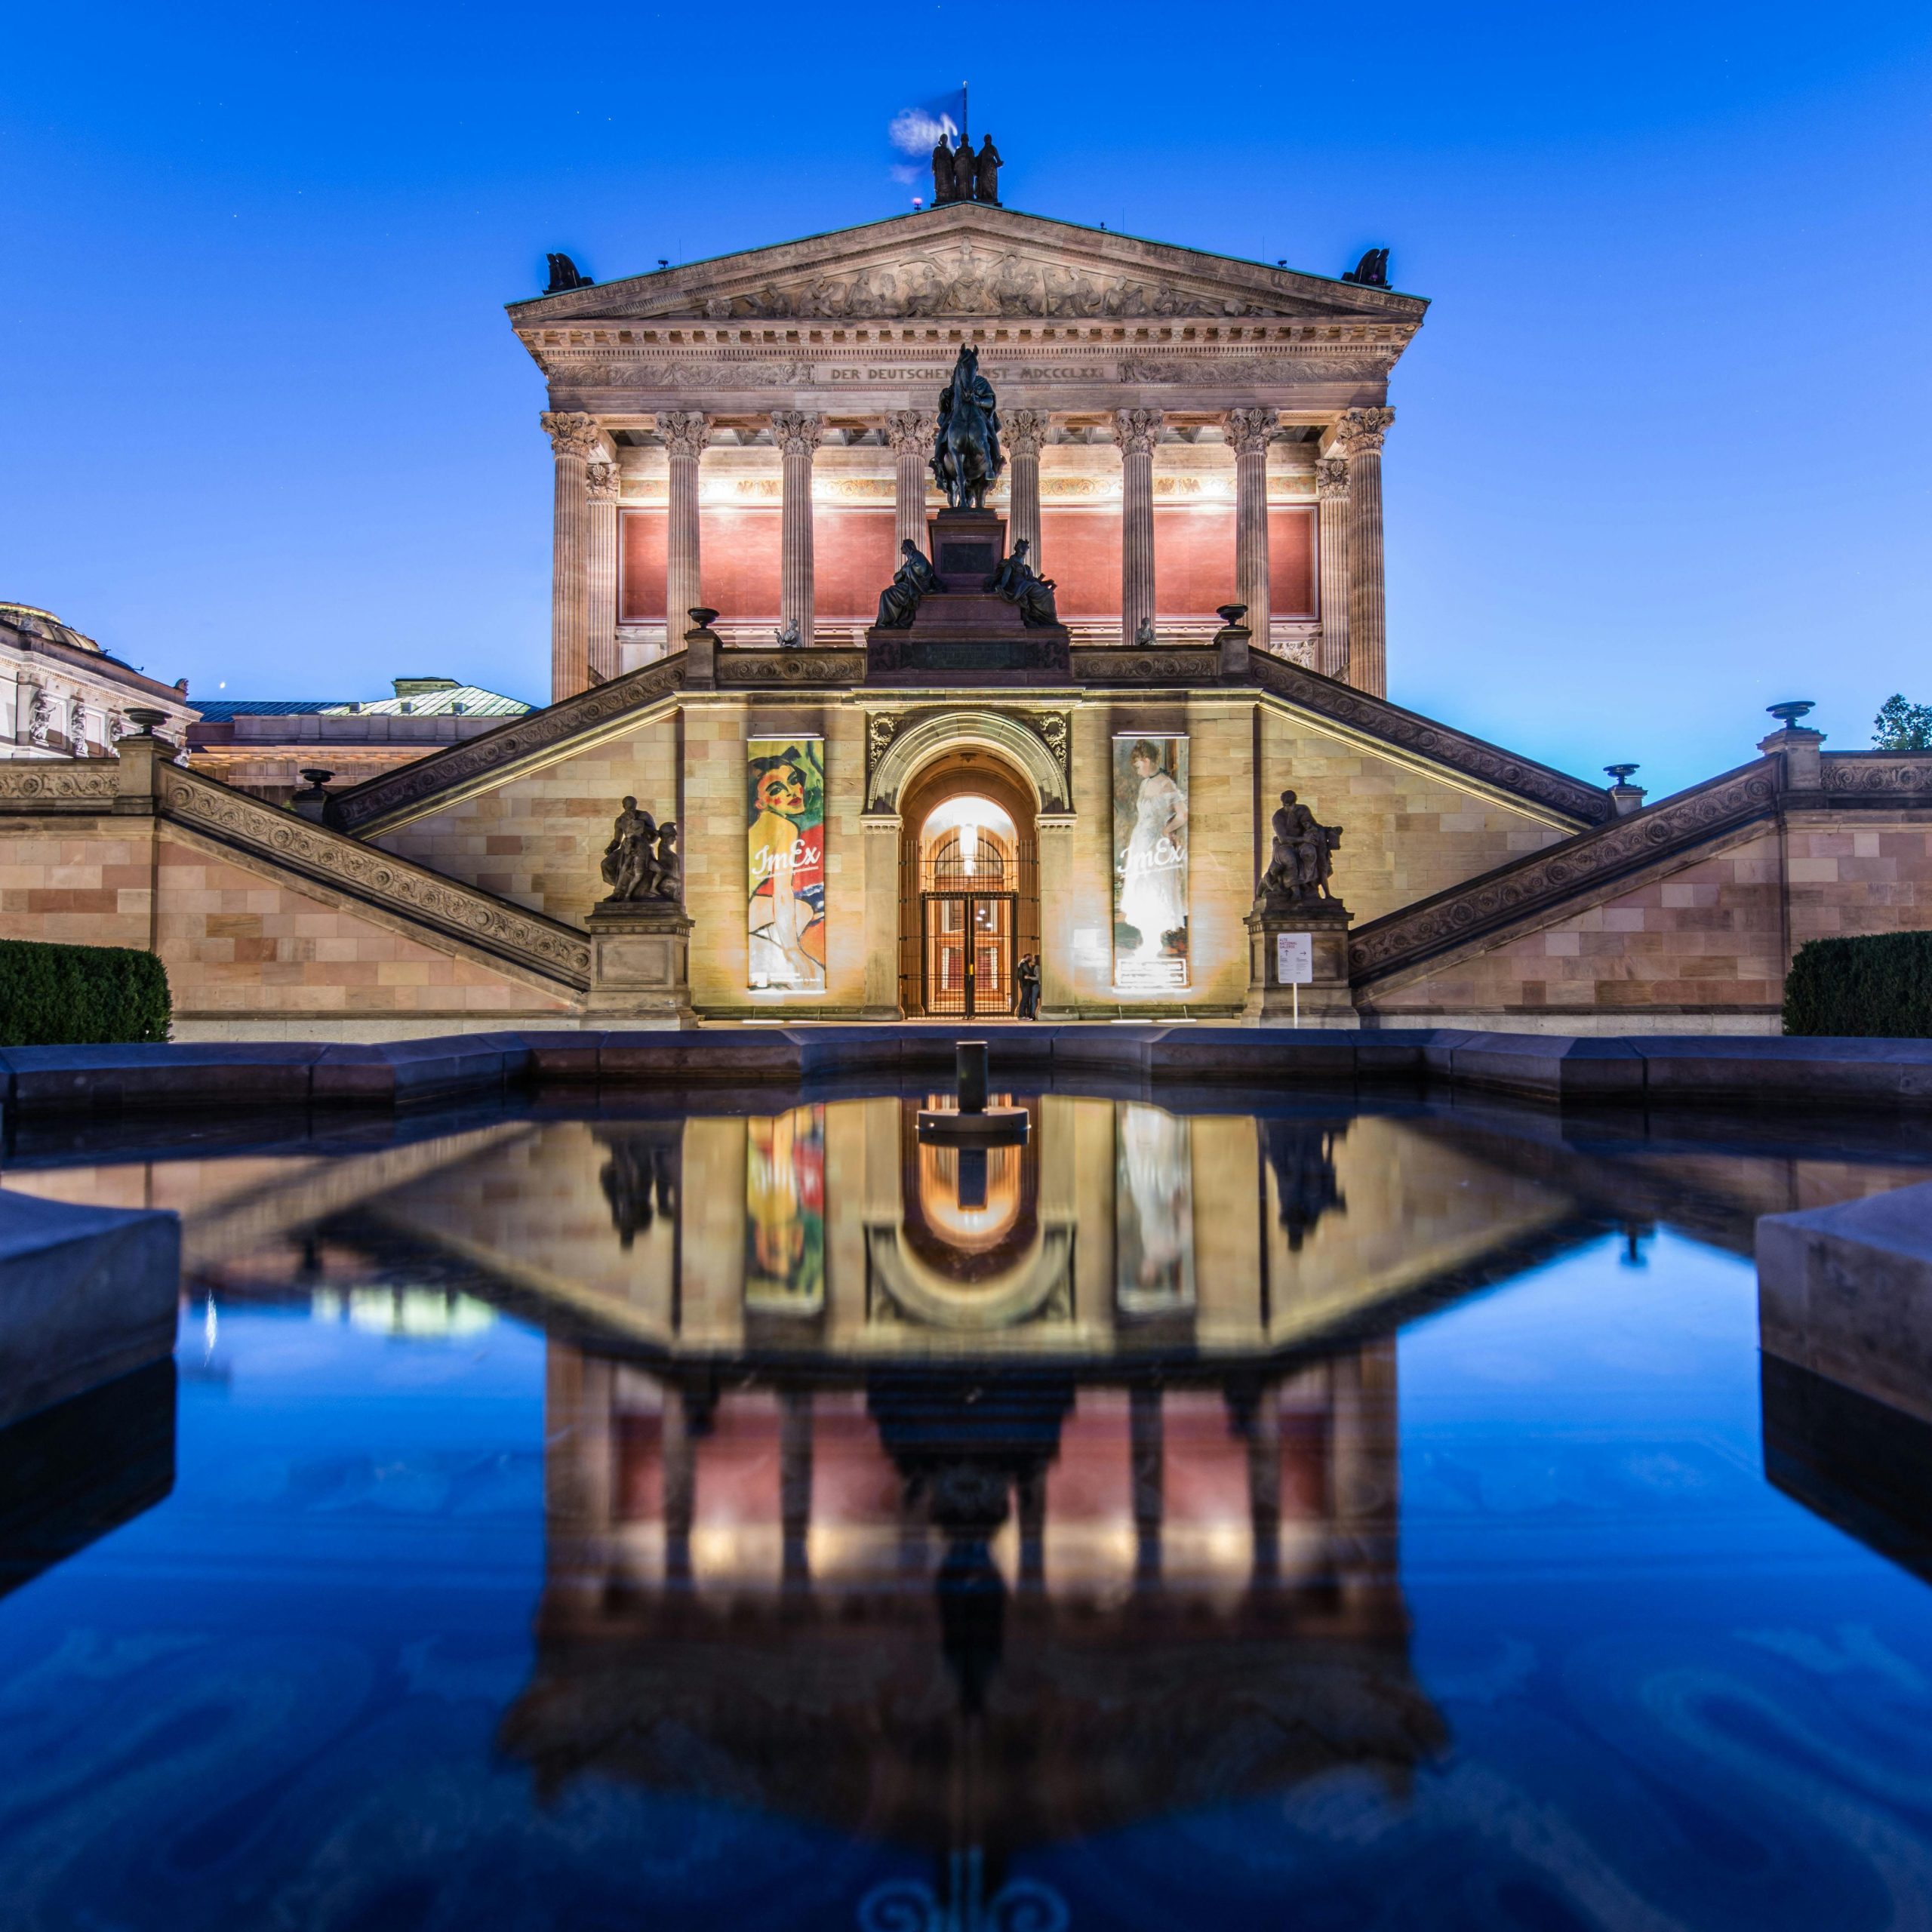 Alte Nationalgalerie musea in berlijn